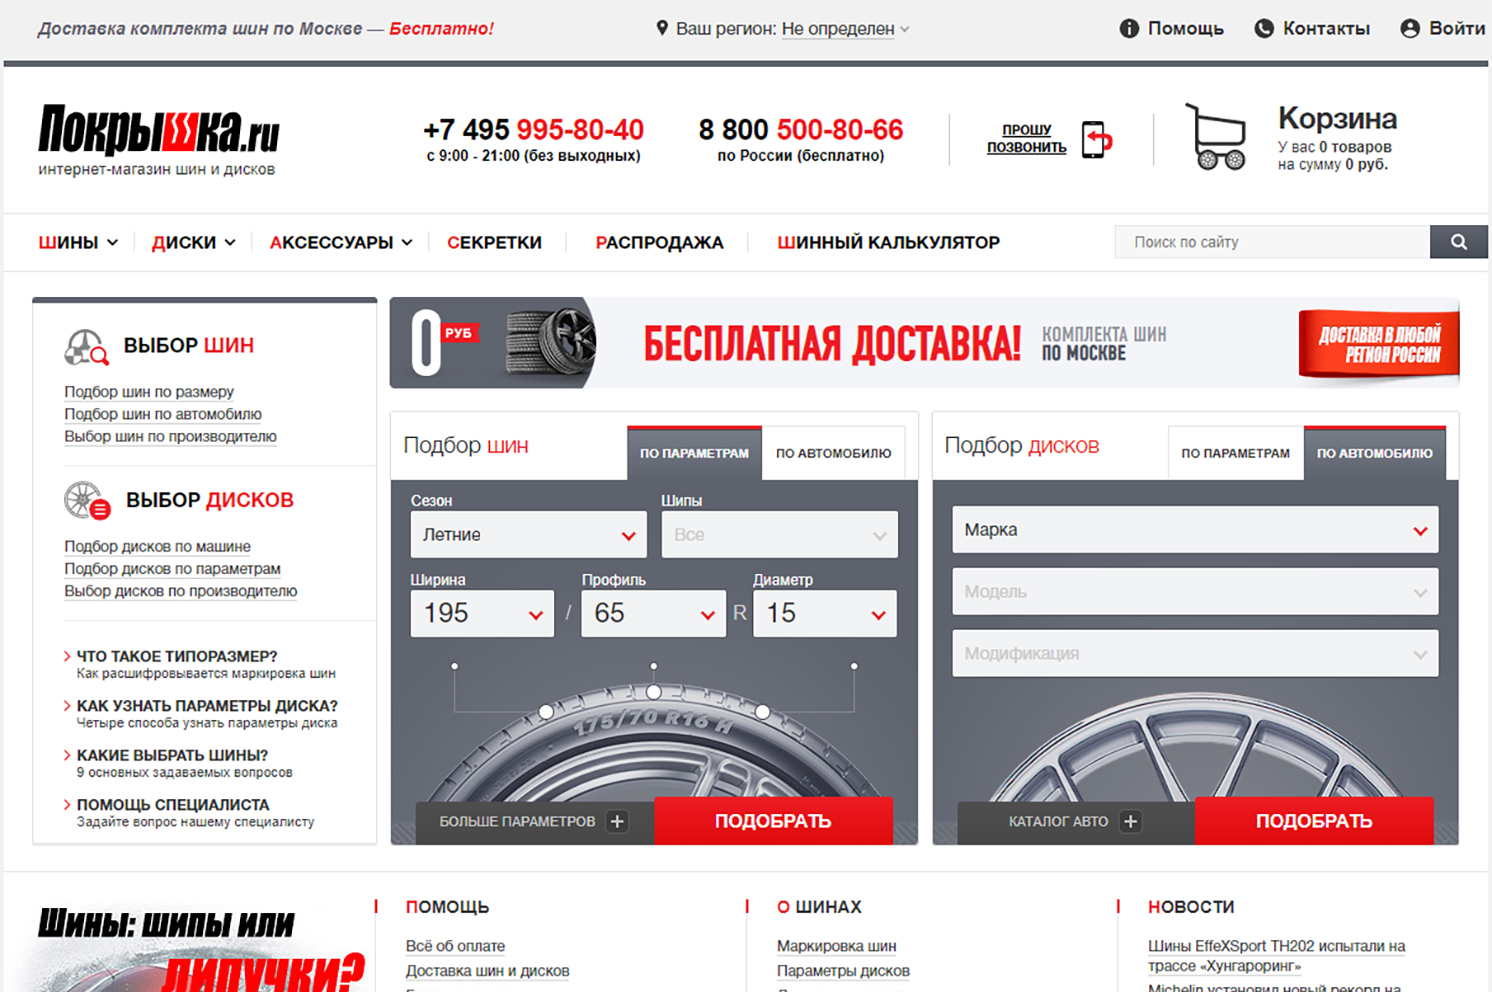 Интернет-магазин шин и дисков Покрышка.ру